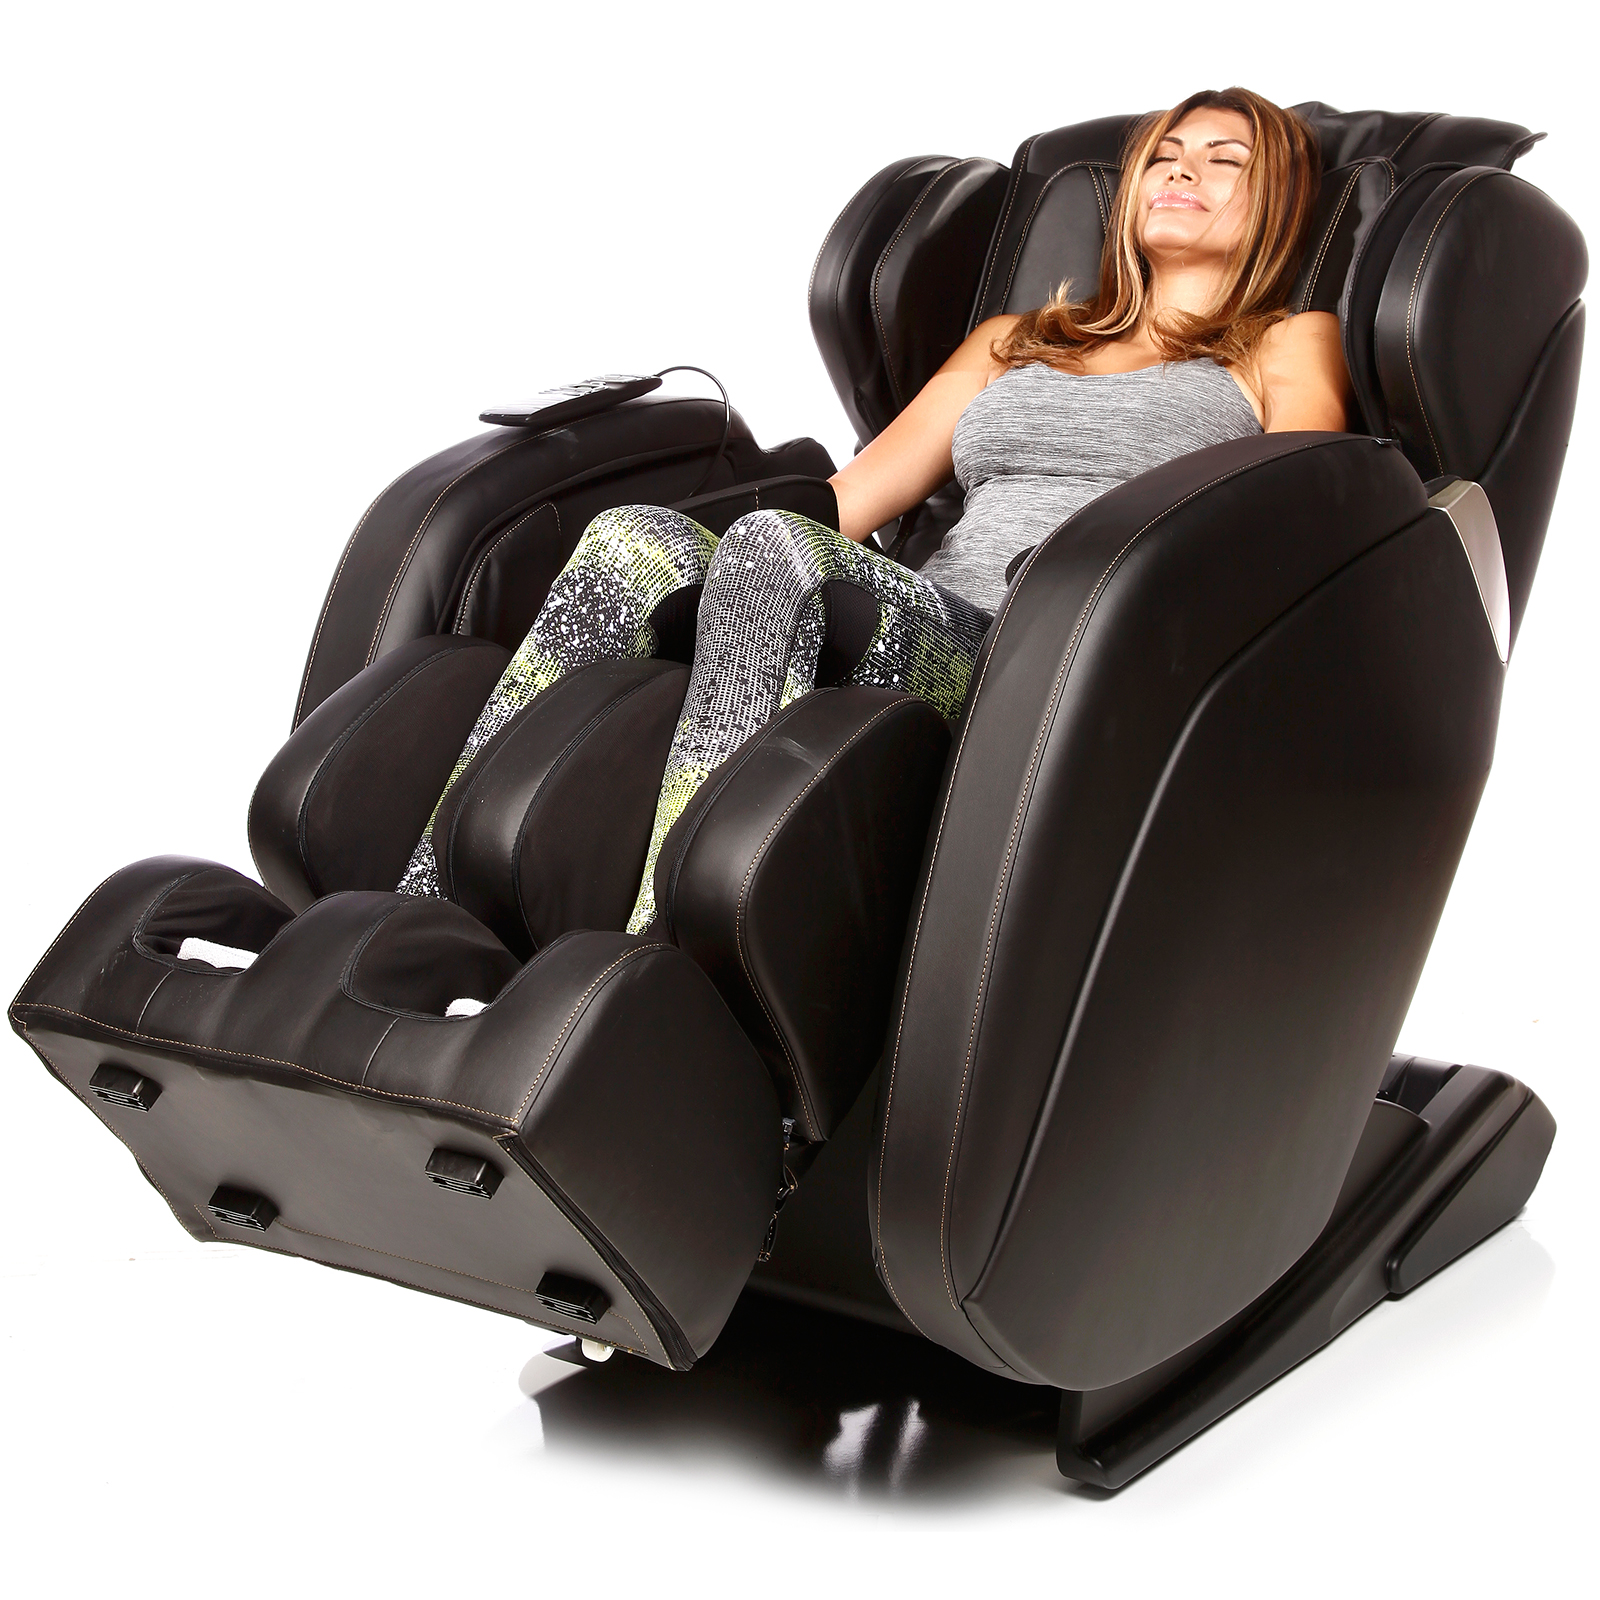 FJ-5500 dr. fjuji massage chair